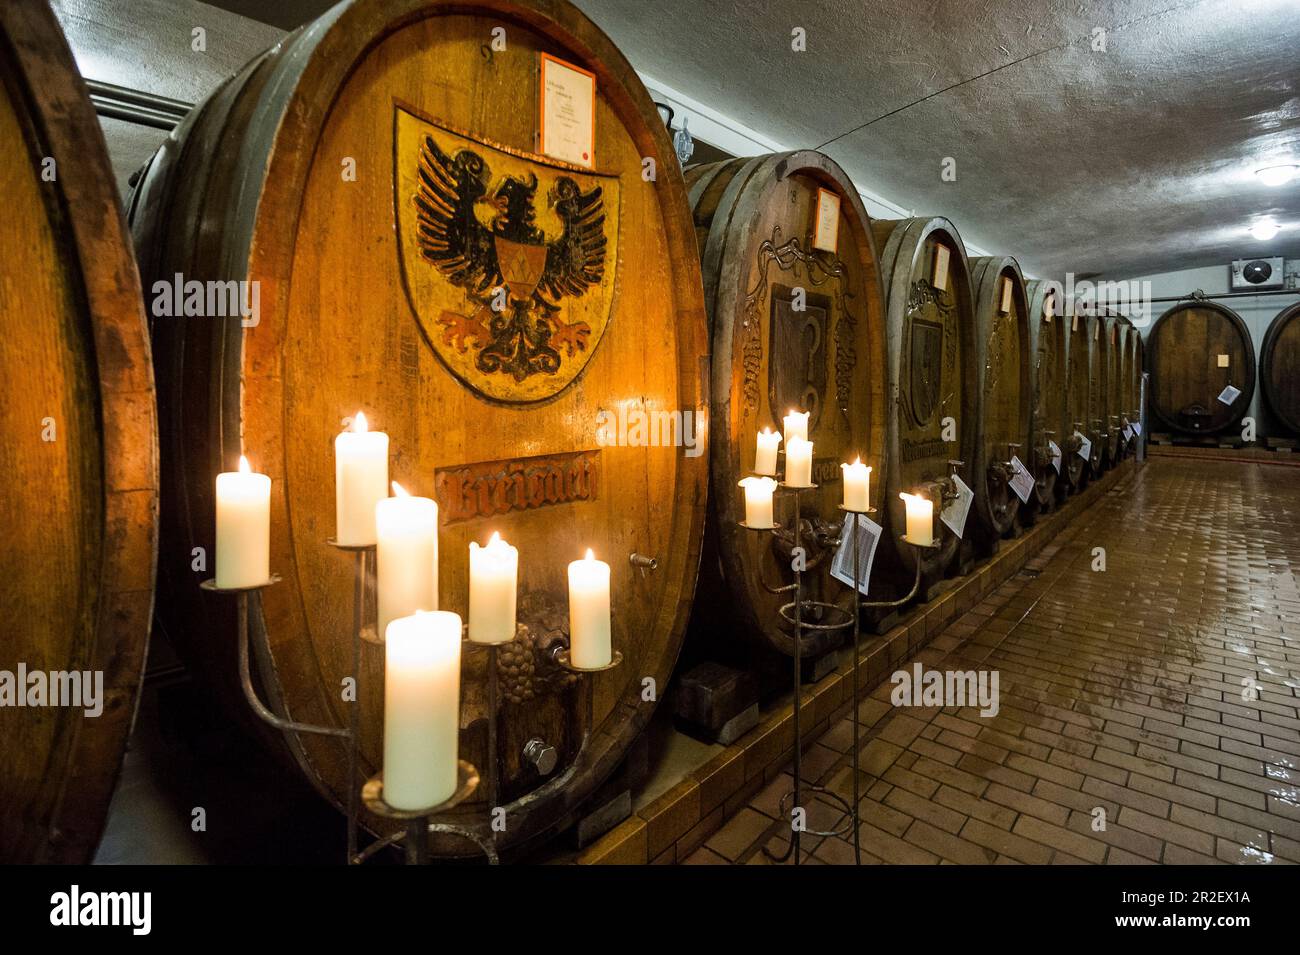 Old wine barrels, Badischer Winzerkeller, Breisach am Rhein, Breisgau, Black Forest, Baden-Württemberg, Germany Stock Photo